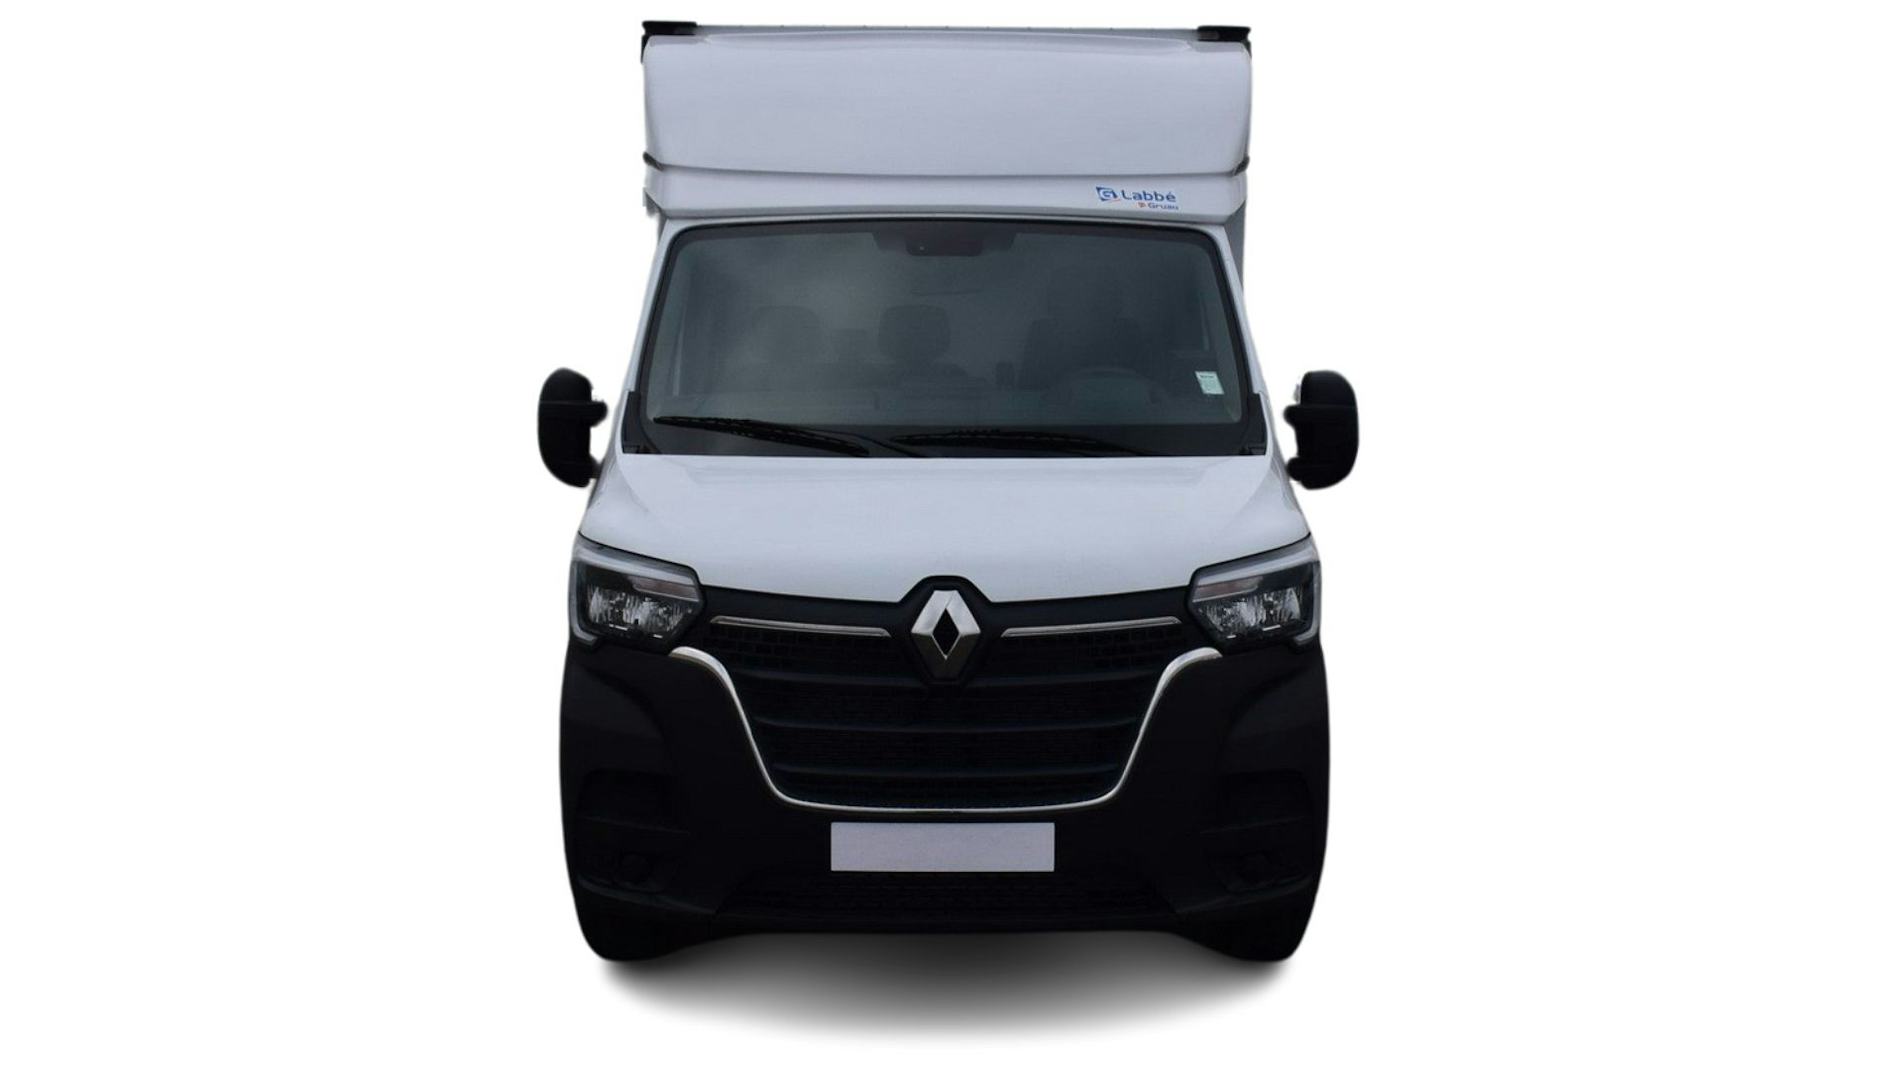 Altus Utilitaires - Renault Master L4 Camion 20m3 Confort + Hayon Elevateur